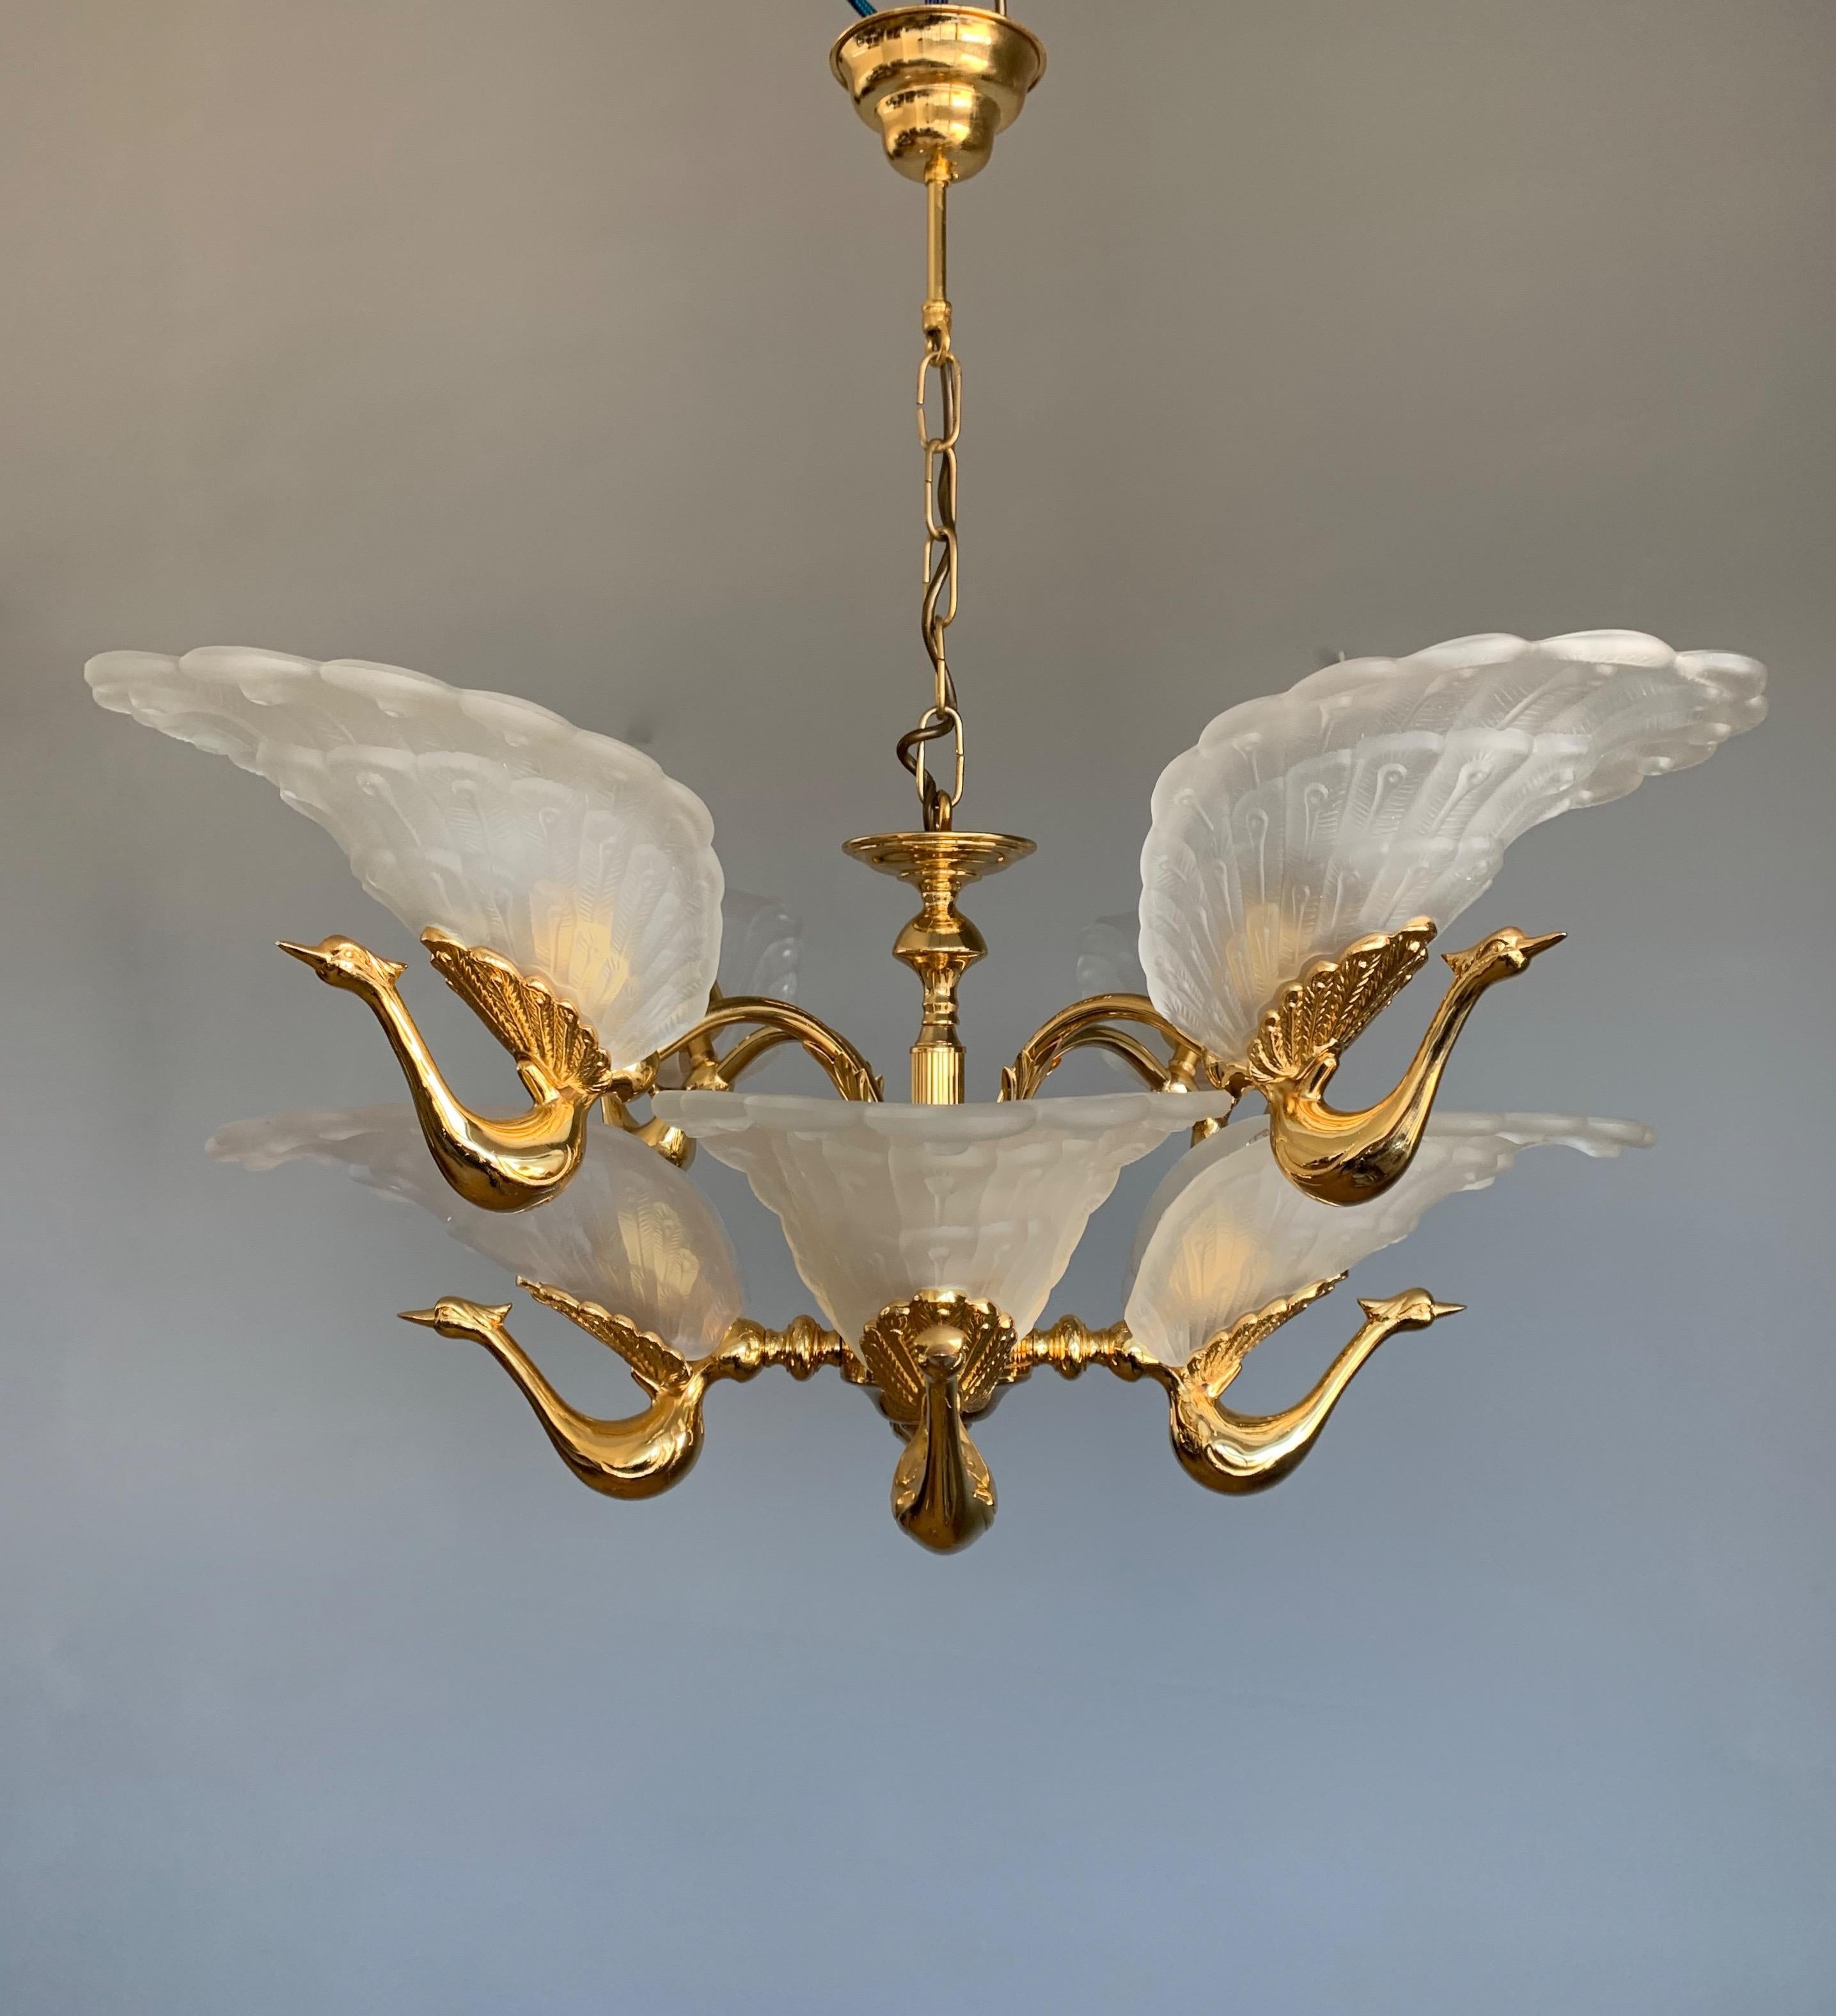 20th Century Rare Midcentury Chandelier / Pendant w. Golden Bronze & Glass Peacock Sculptures